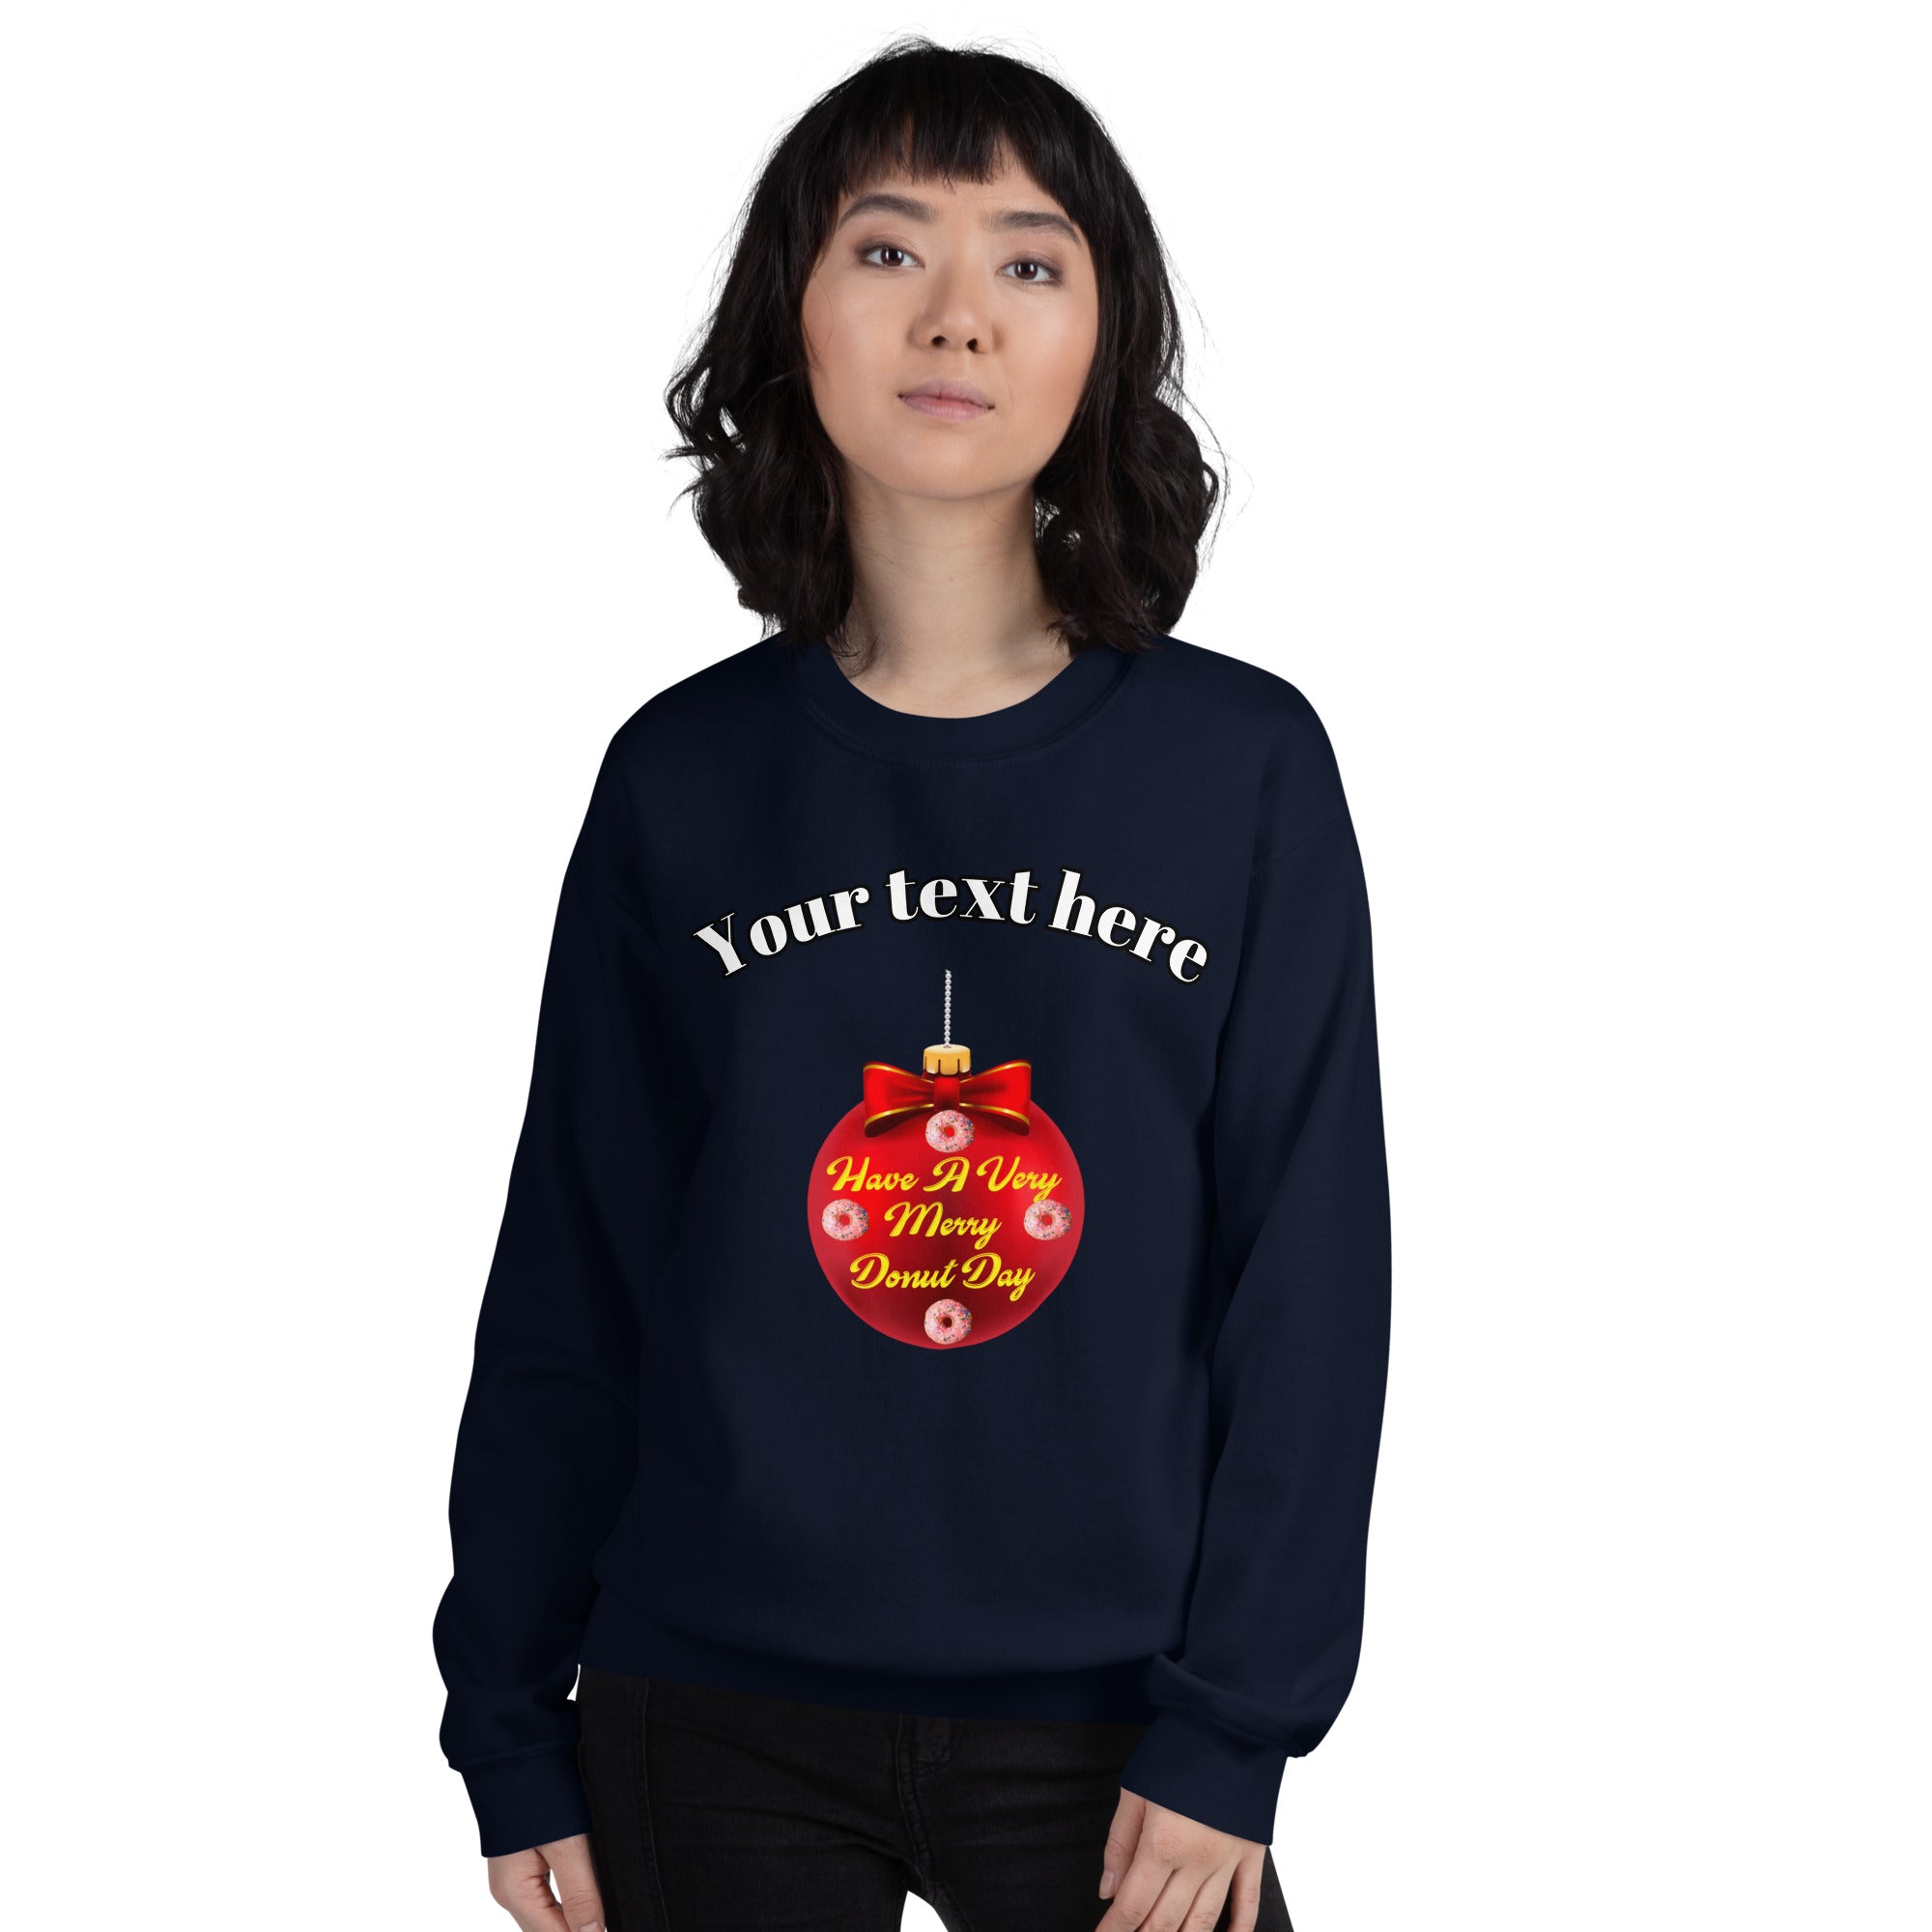 Personalized Women's Premium Sweatshirt